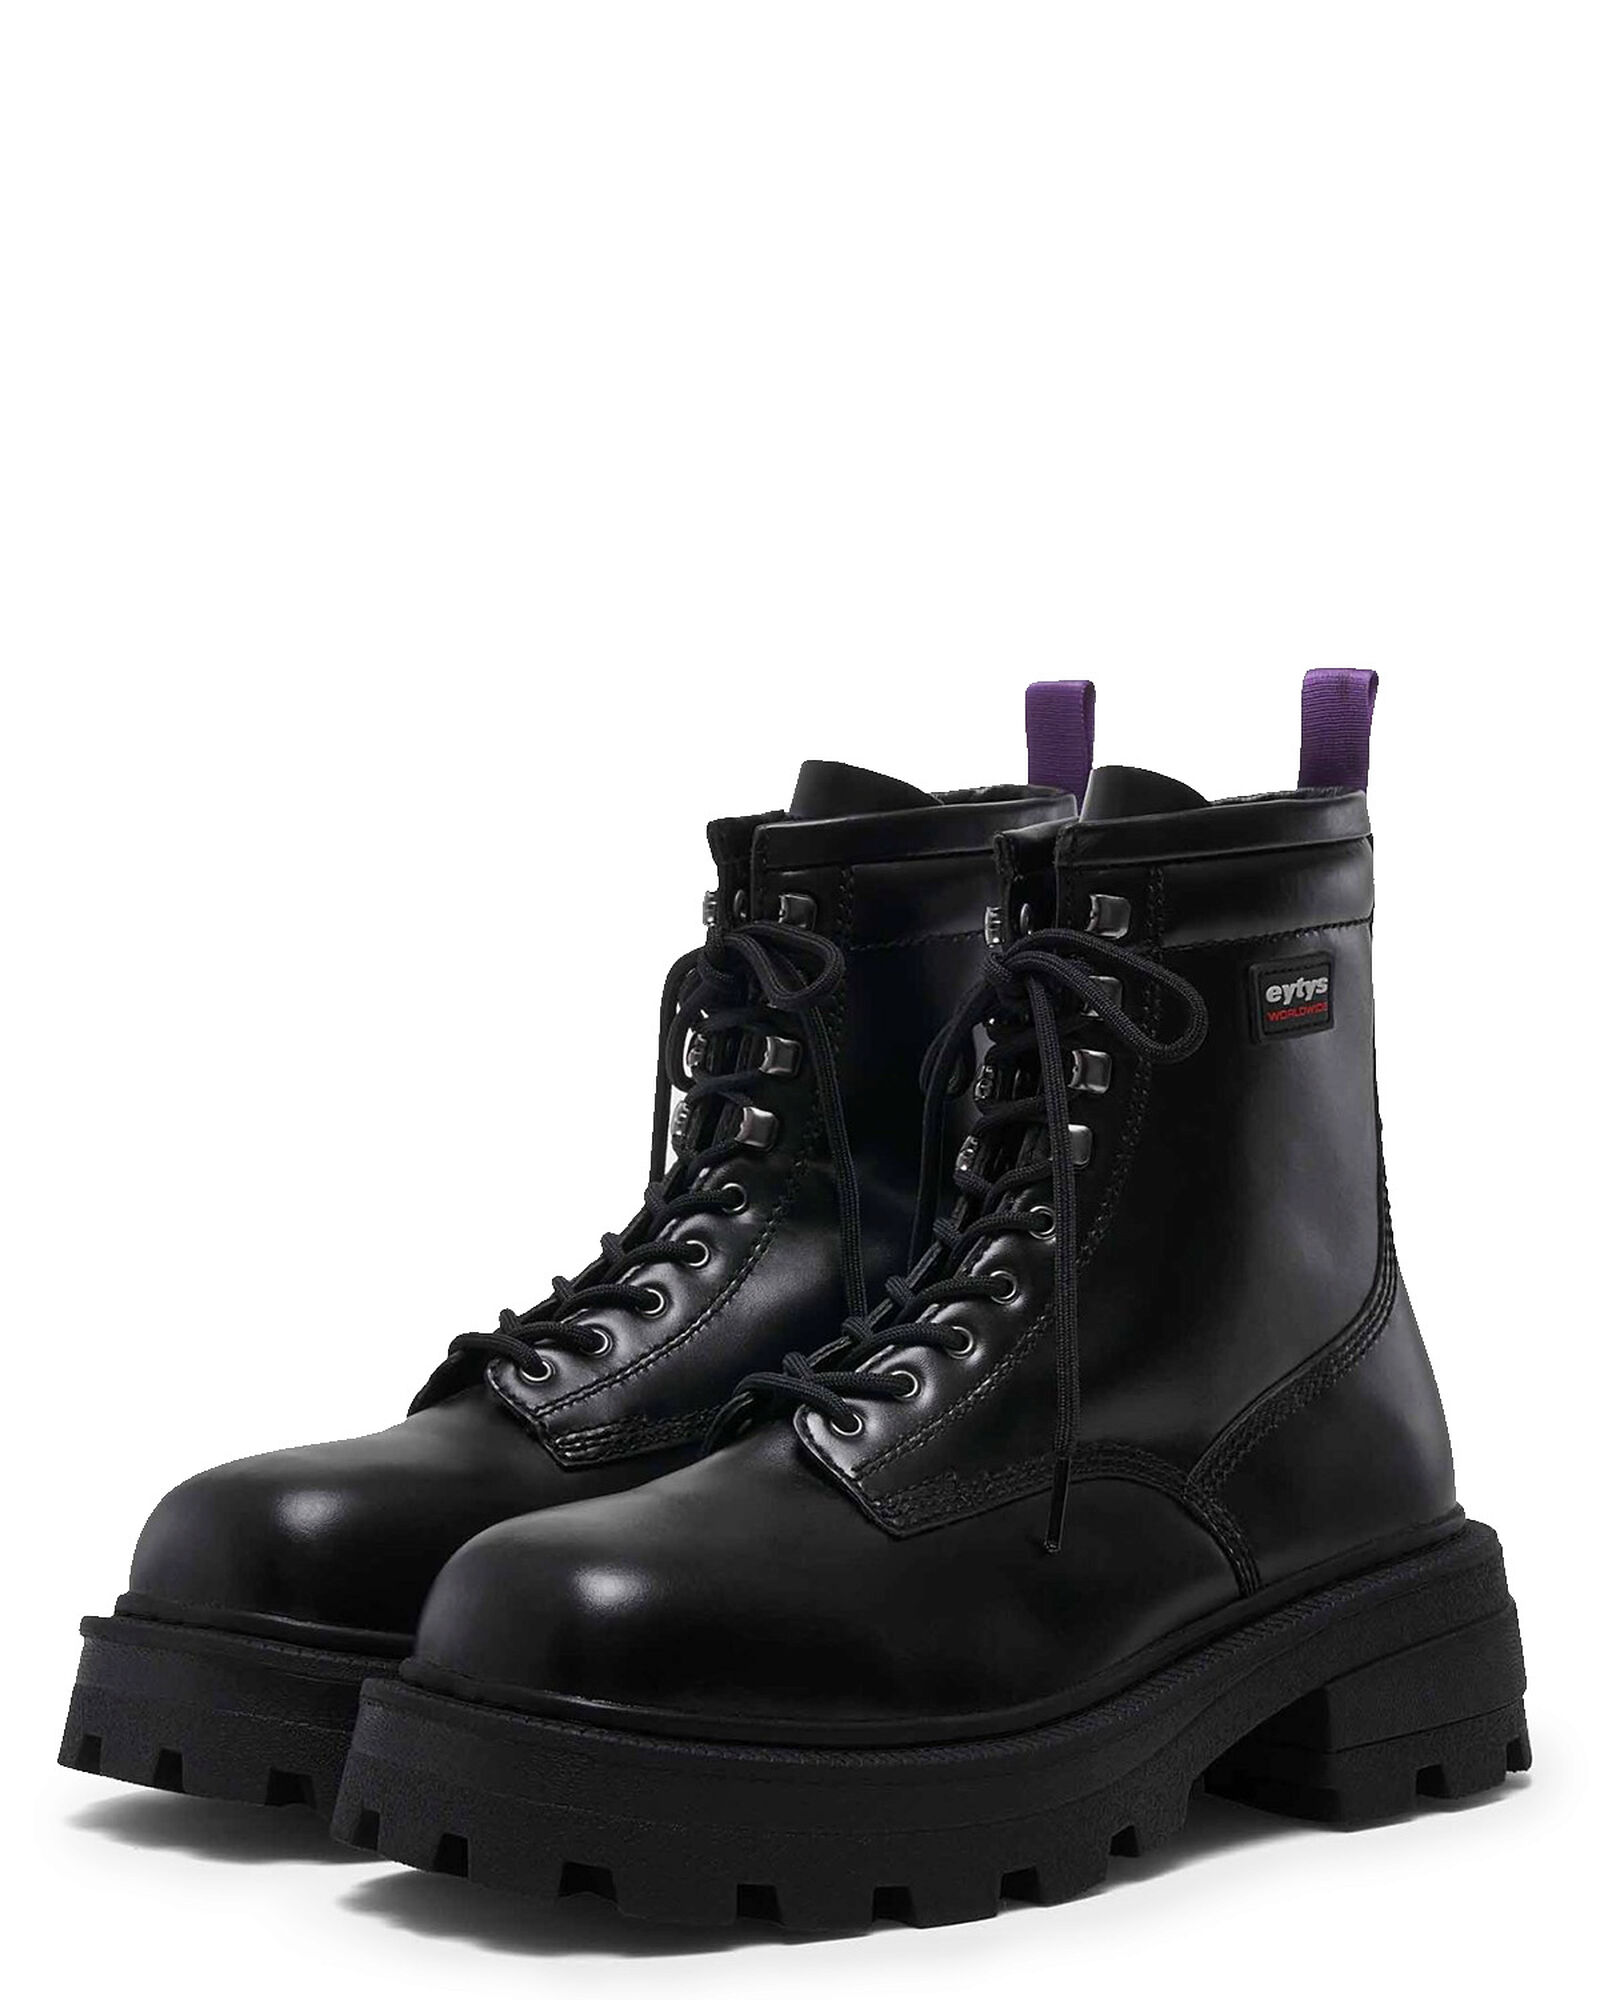 Eytys Michigan Leather Black Boots & Kängor | Märkeskläder på